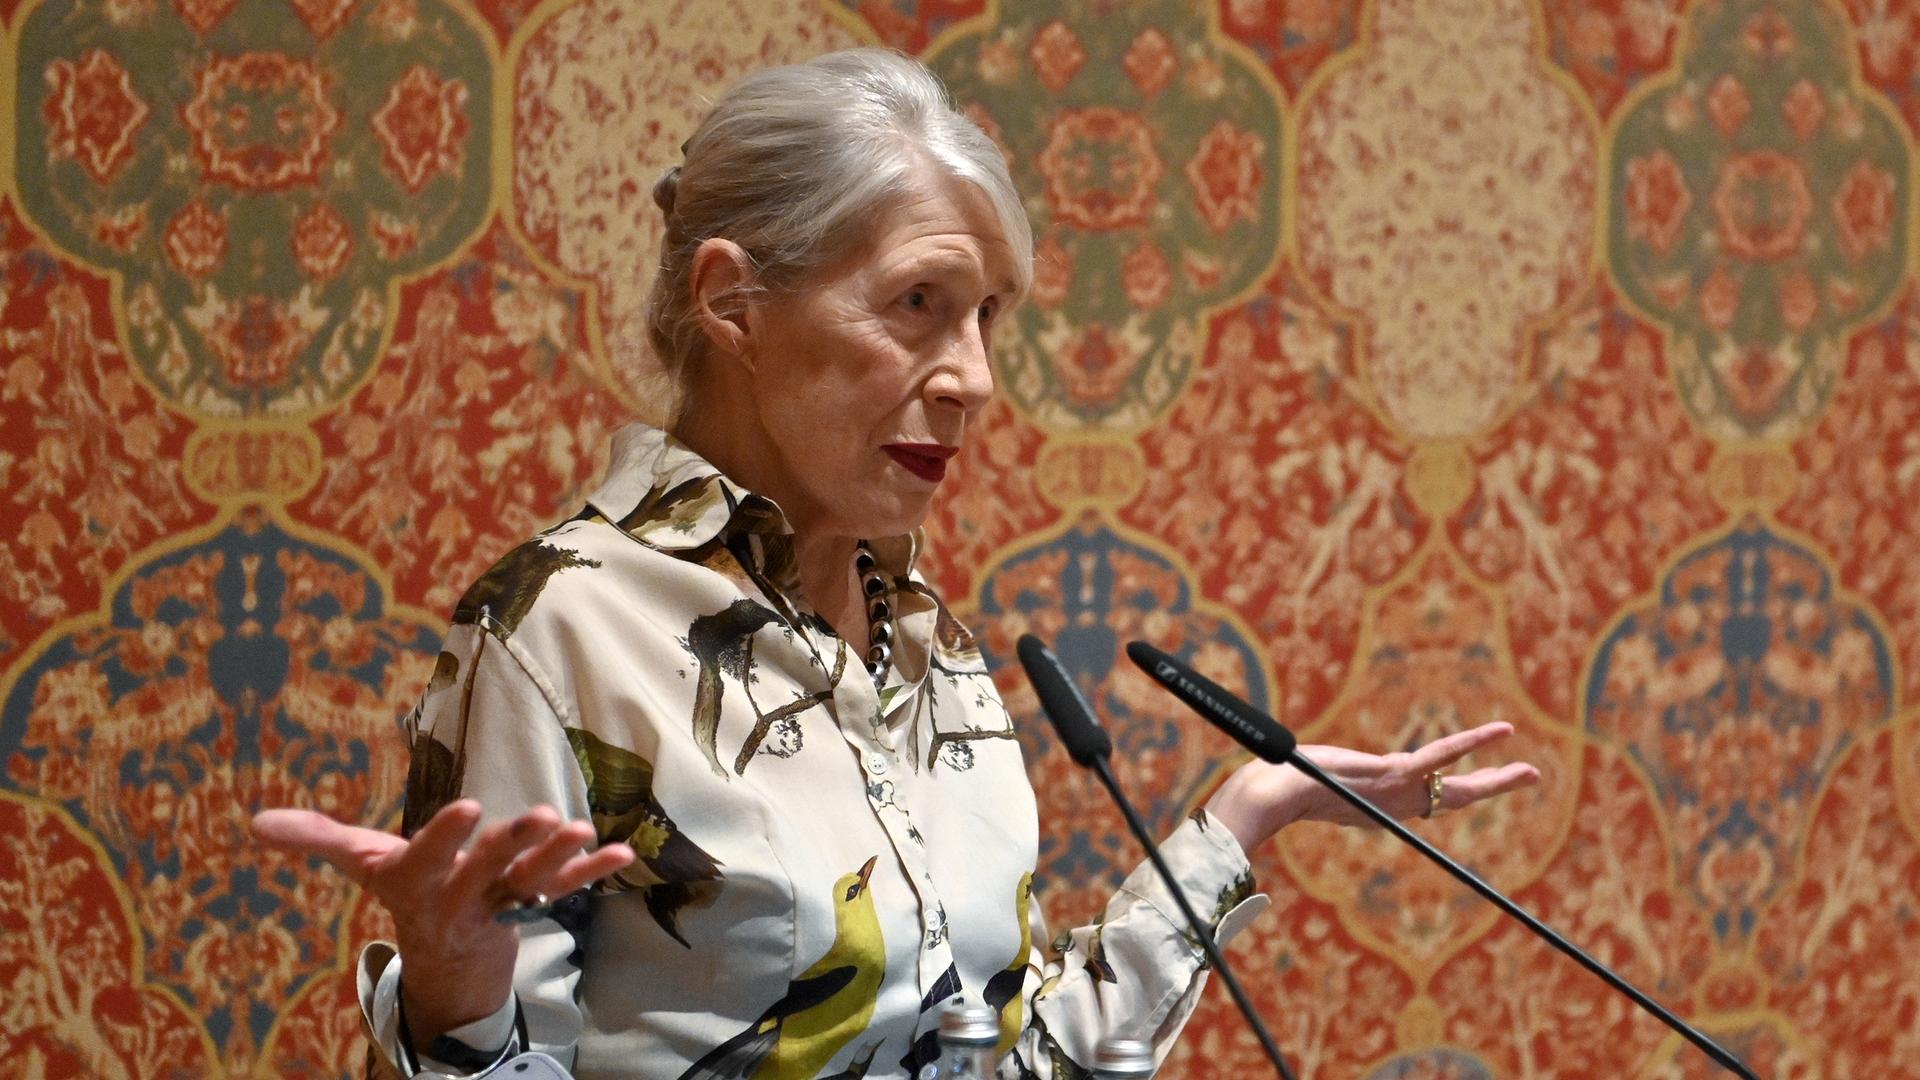 Malerin Martha Jungwirth steht am 15. November 2021 bei der Verleihung des Großen Österreichischen Staatspreises 2021 im Leopold Museum in Wien vor einer Tapete mit bunten Ornamenten.